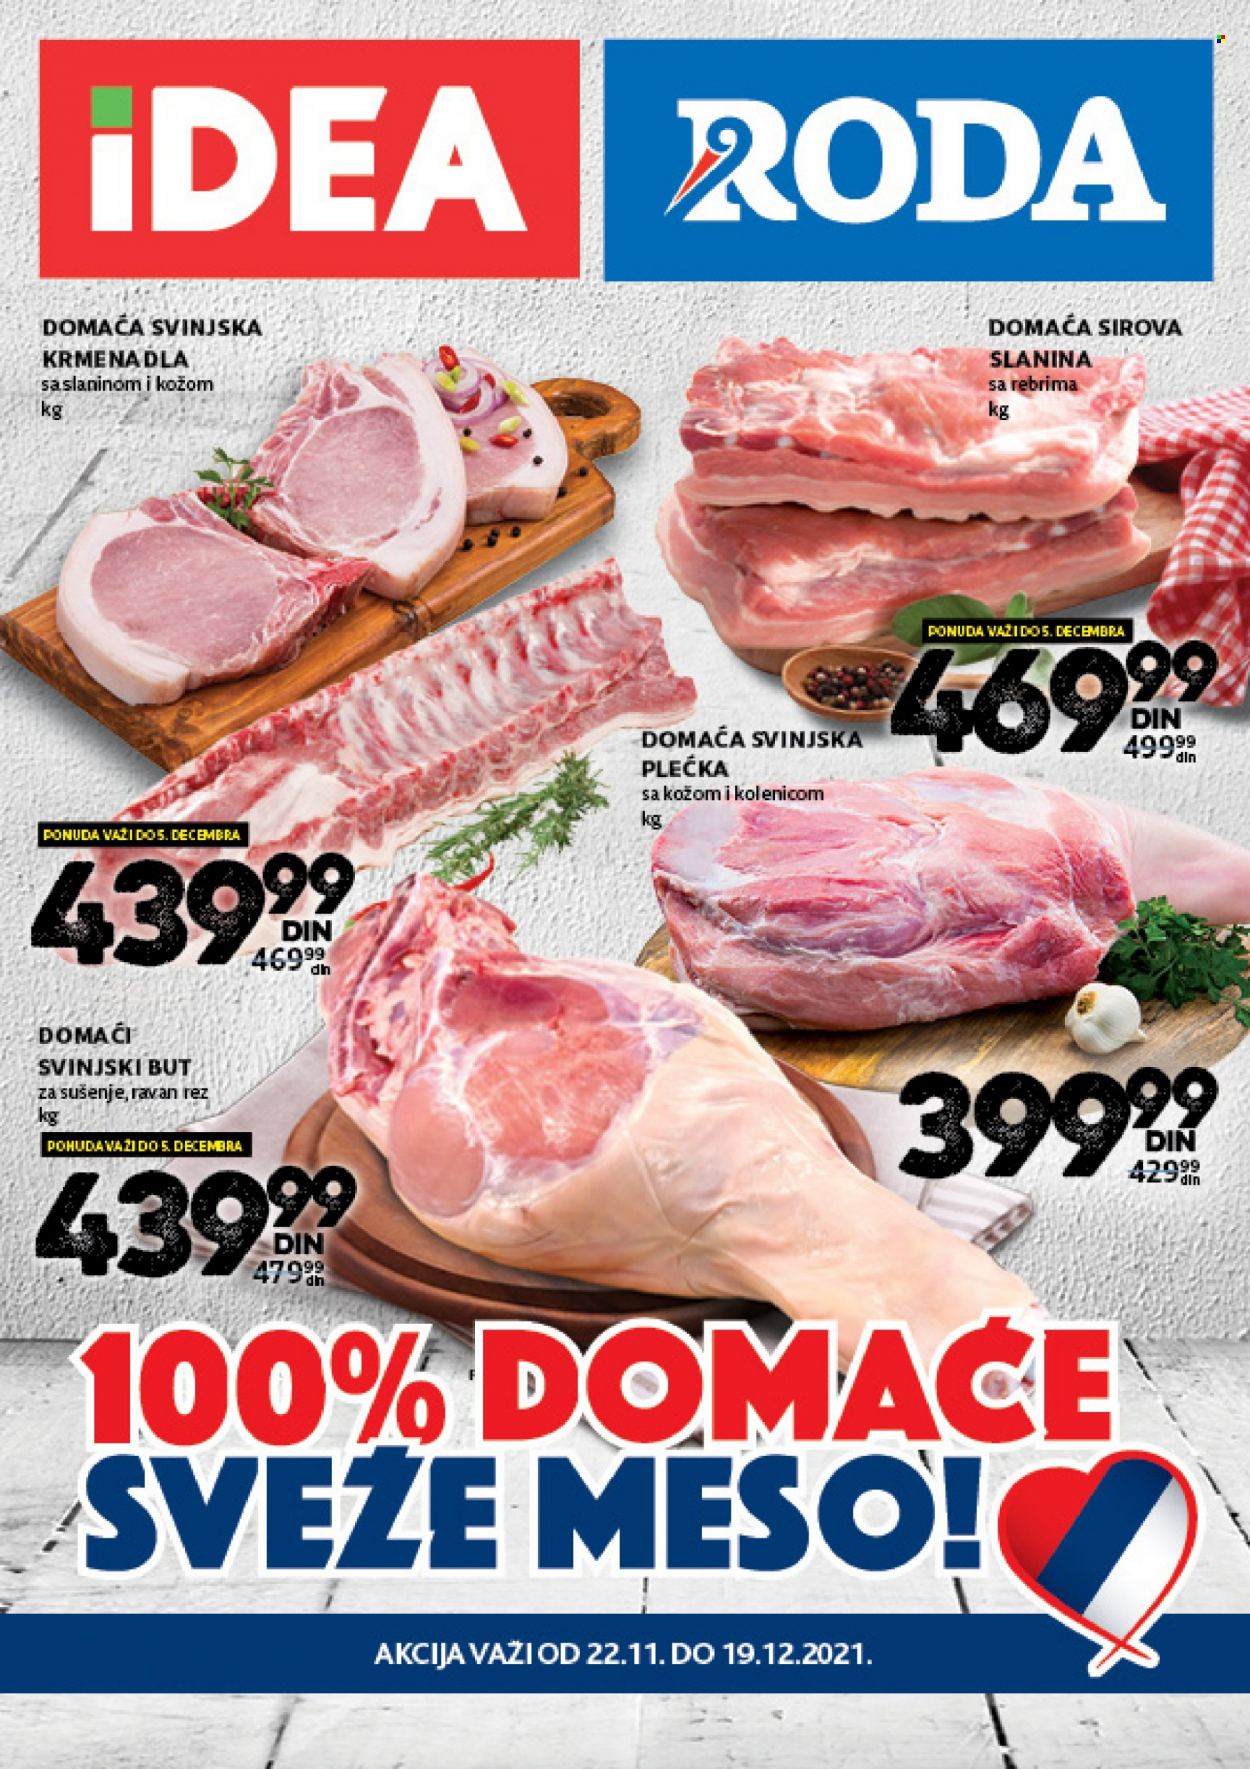 thumbnail - Idea katalog - 22.11.2021 - 19.12.2021 - Proizvodi na akciji - plećka, svinjska plećka, svinjski but, svinjsko meso, slanina, slanina sa rebrima. Stranica 1.